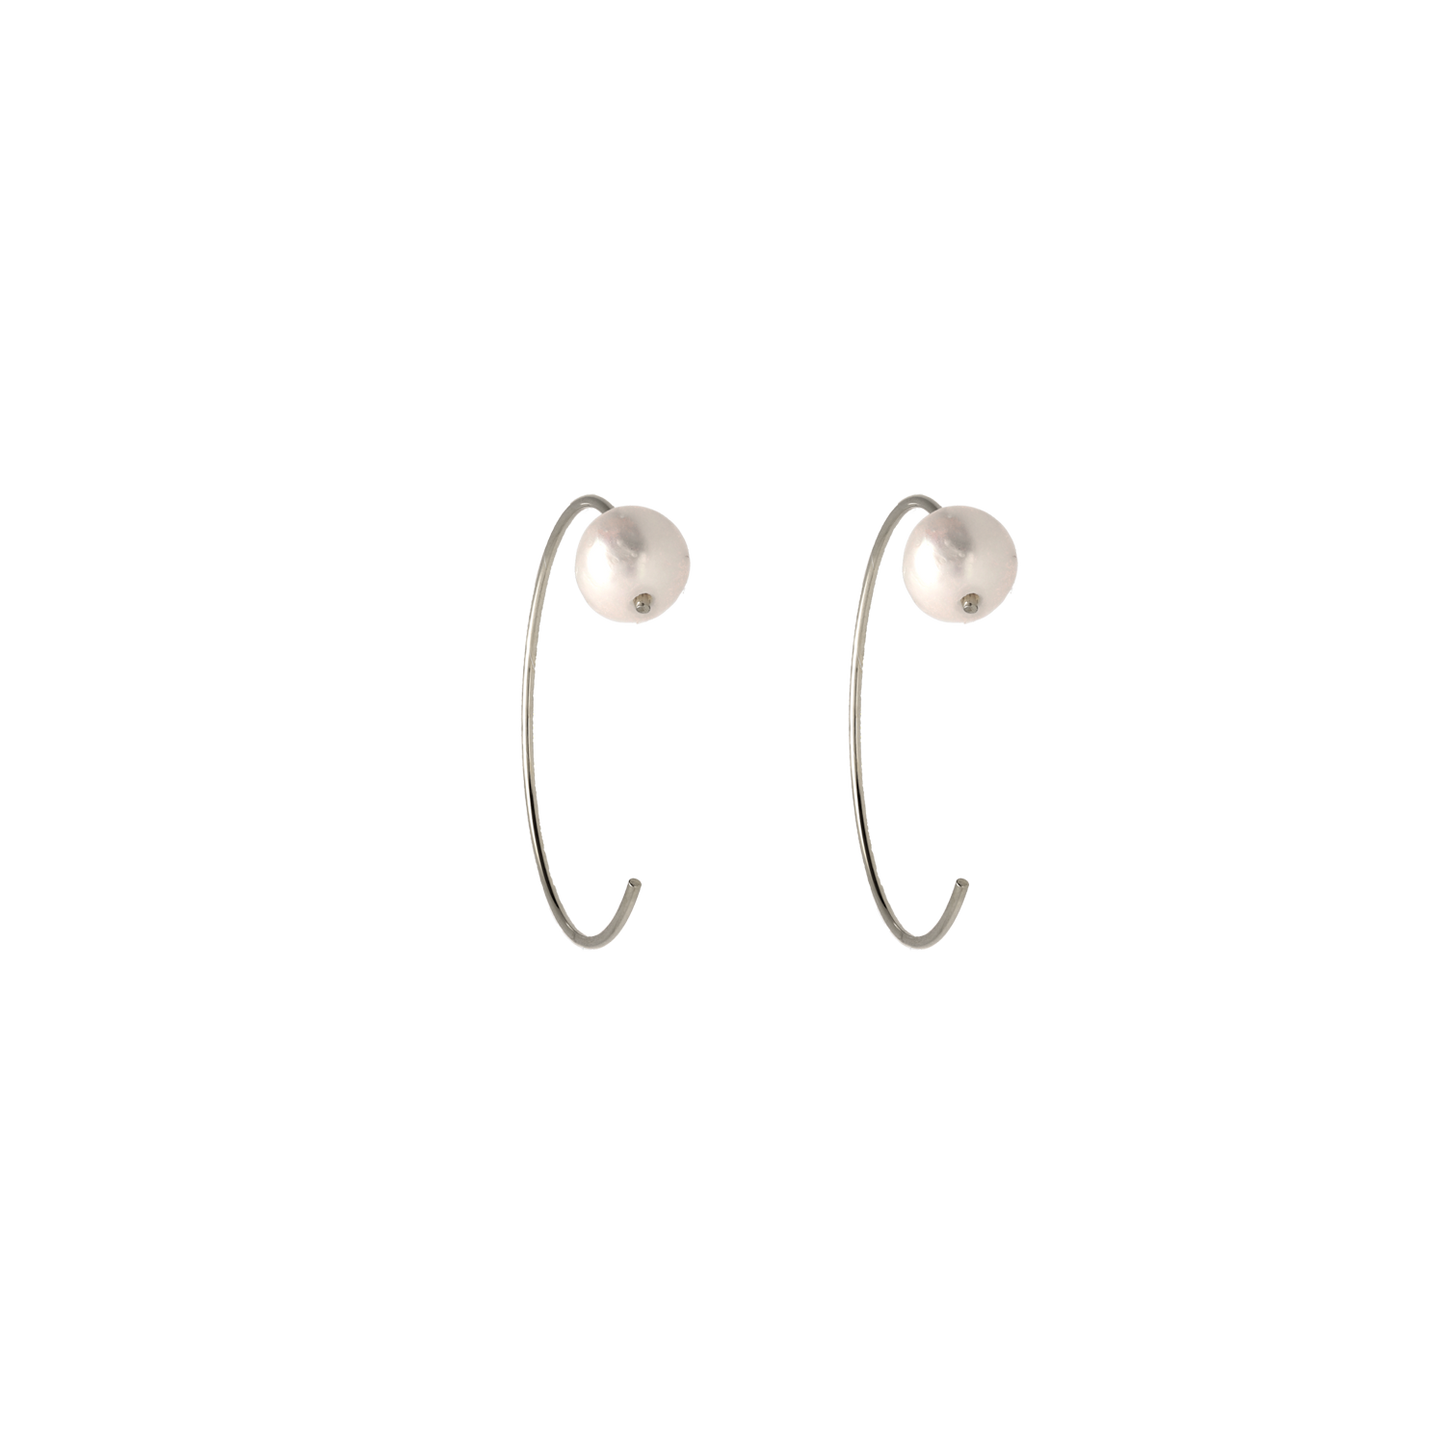 Pendientes finos, abiertos con una perla en el borde. La perla, como elemento principal de esta joya, transmite elegancia y sensualidad. 